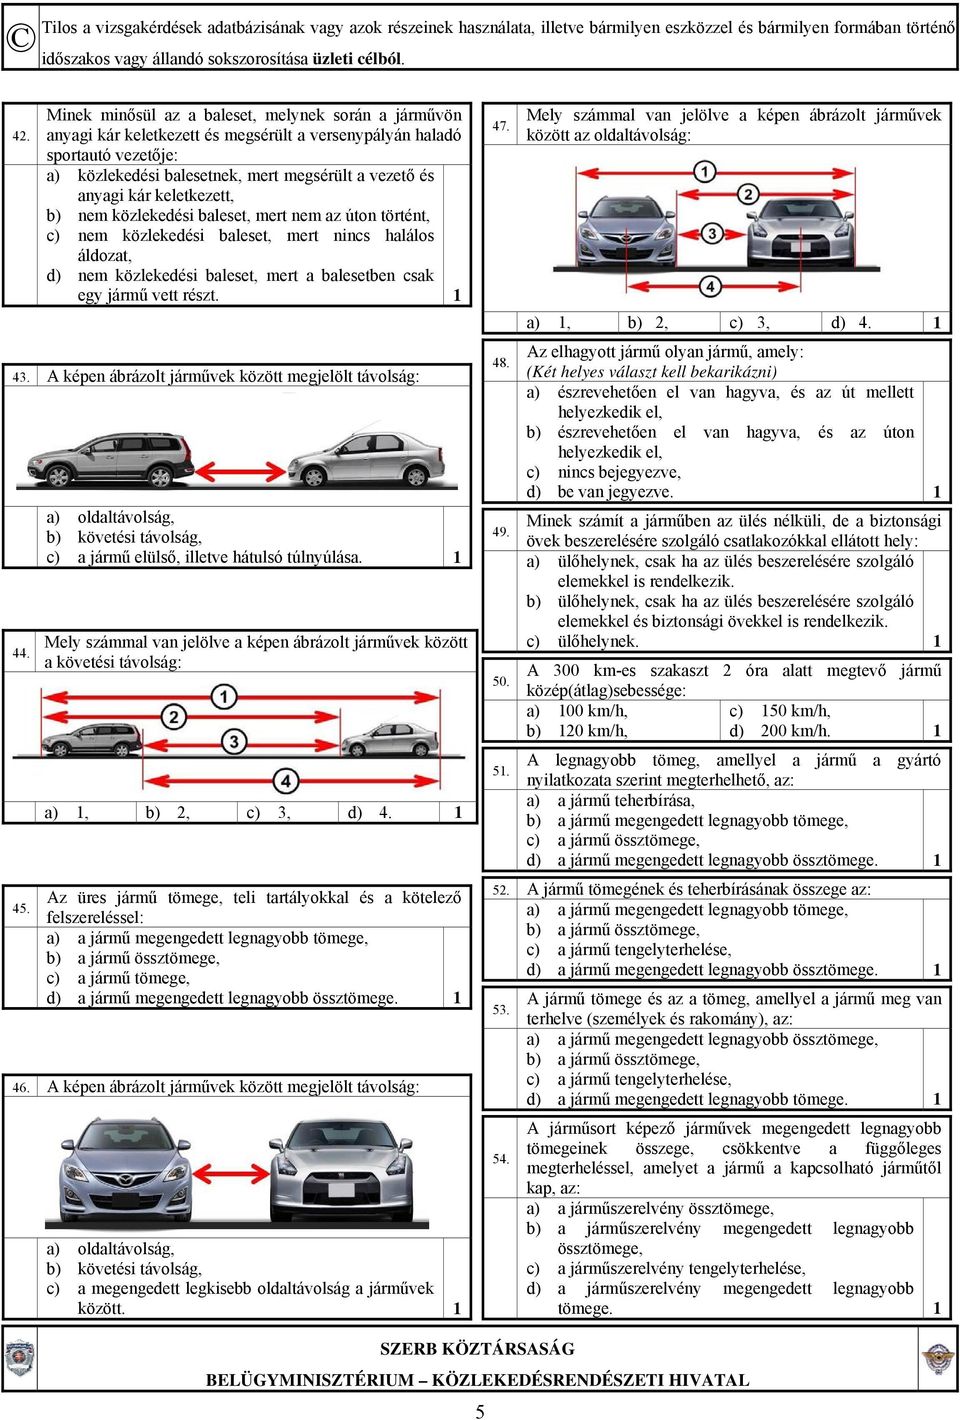 1 43. A képen ábrázolt járművek között megjelölt távolság: 44. 45. a) oldaltávolság, b) követési távolság, c) a jármű elülső, illetve hátulsó túlnyúlása.